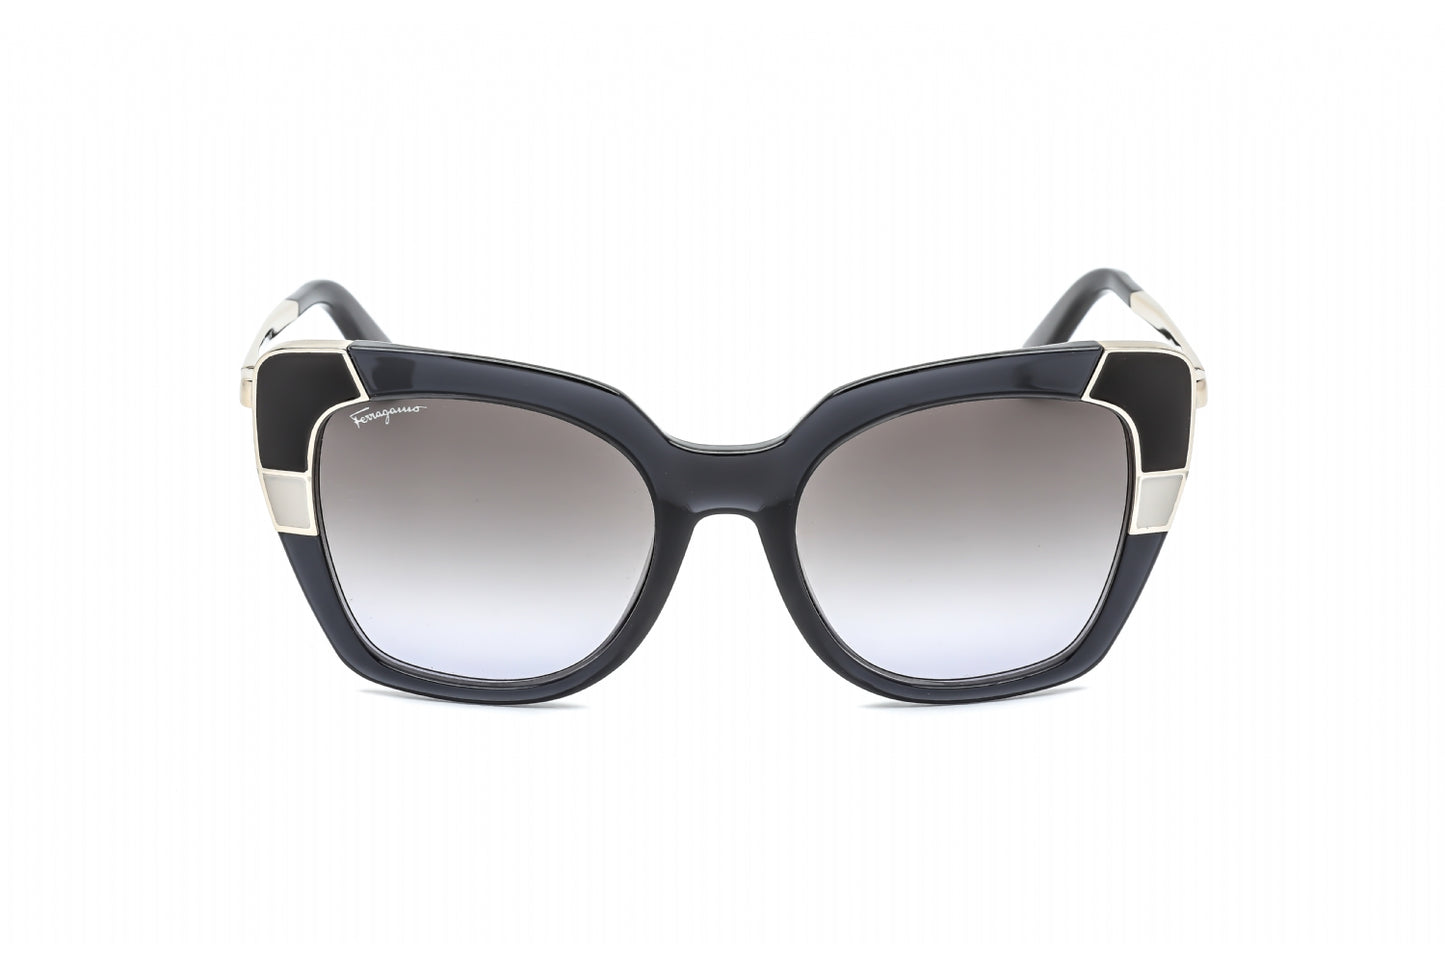 Salvatore Ferragamo SF889S-057 52mm New Sunglasses